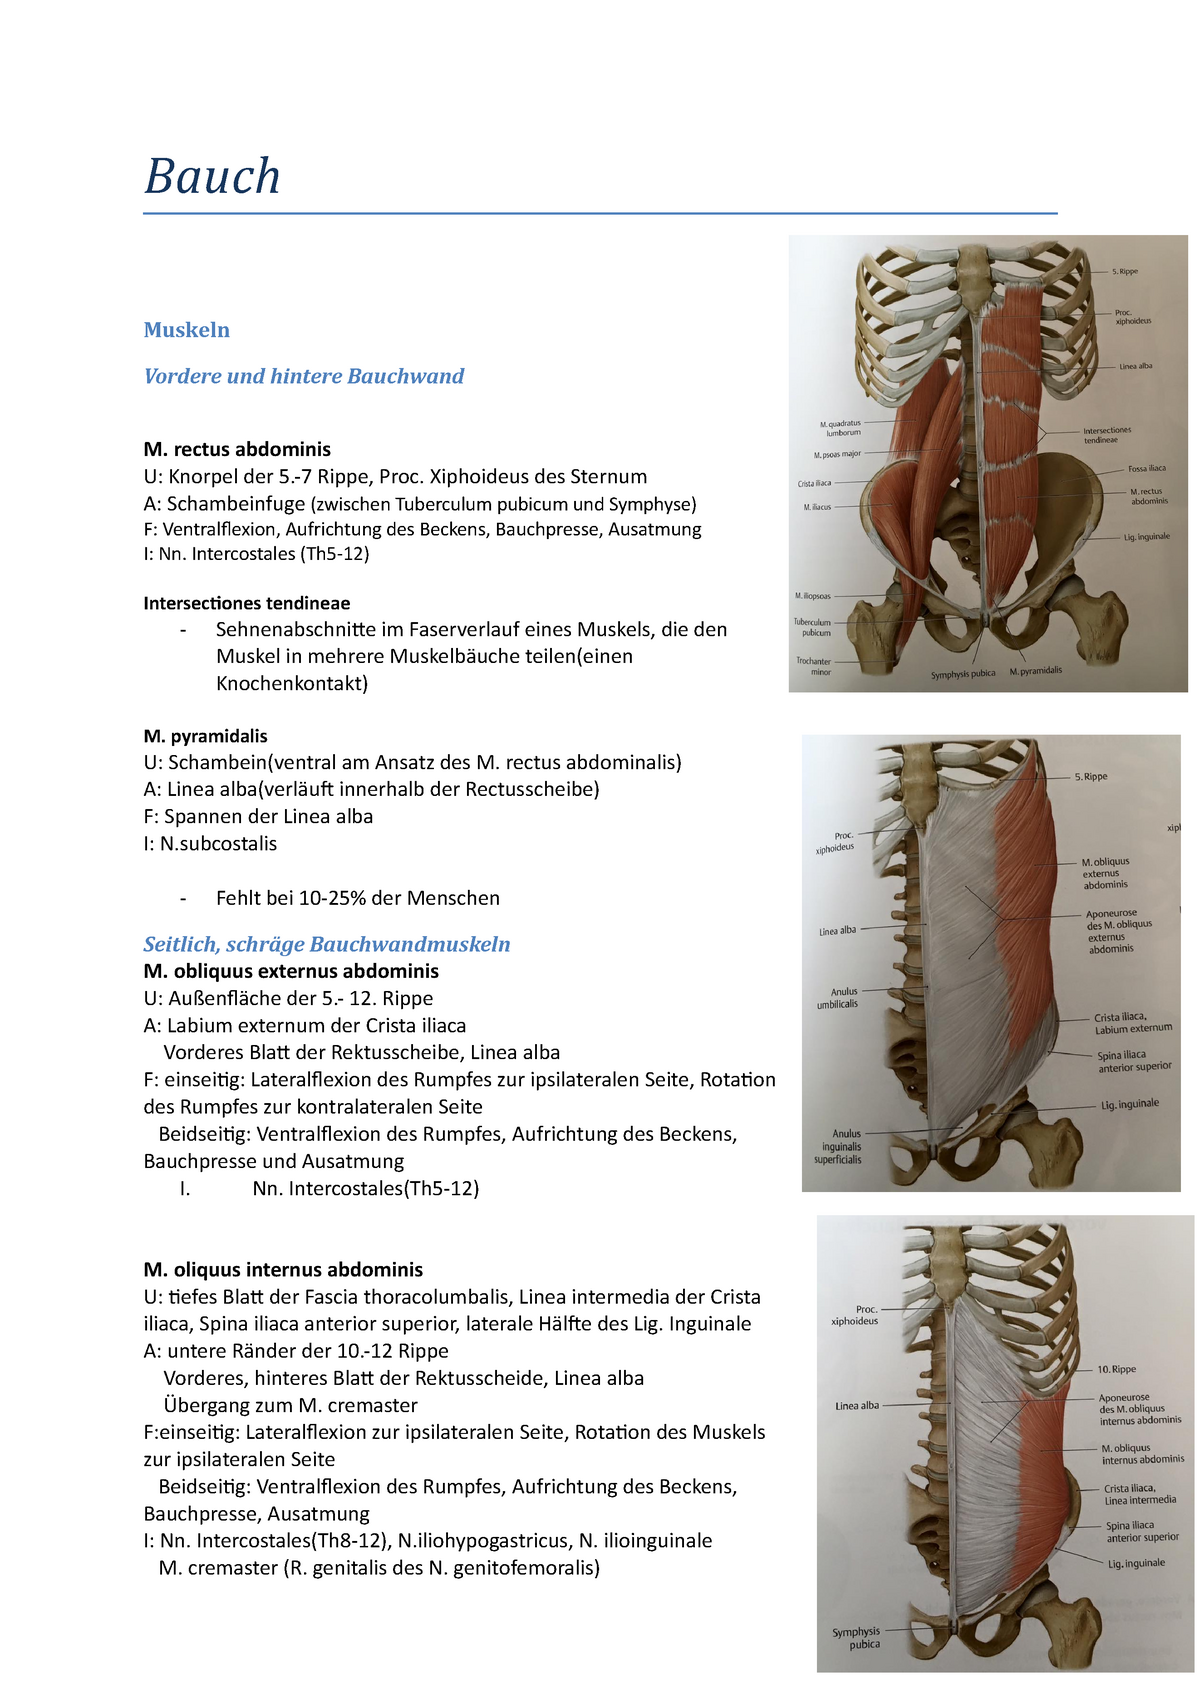 Bauch - Zusammenfassung Organmorphologie I - Bauch Muskeln Vordere